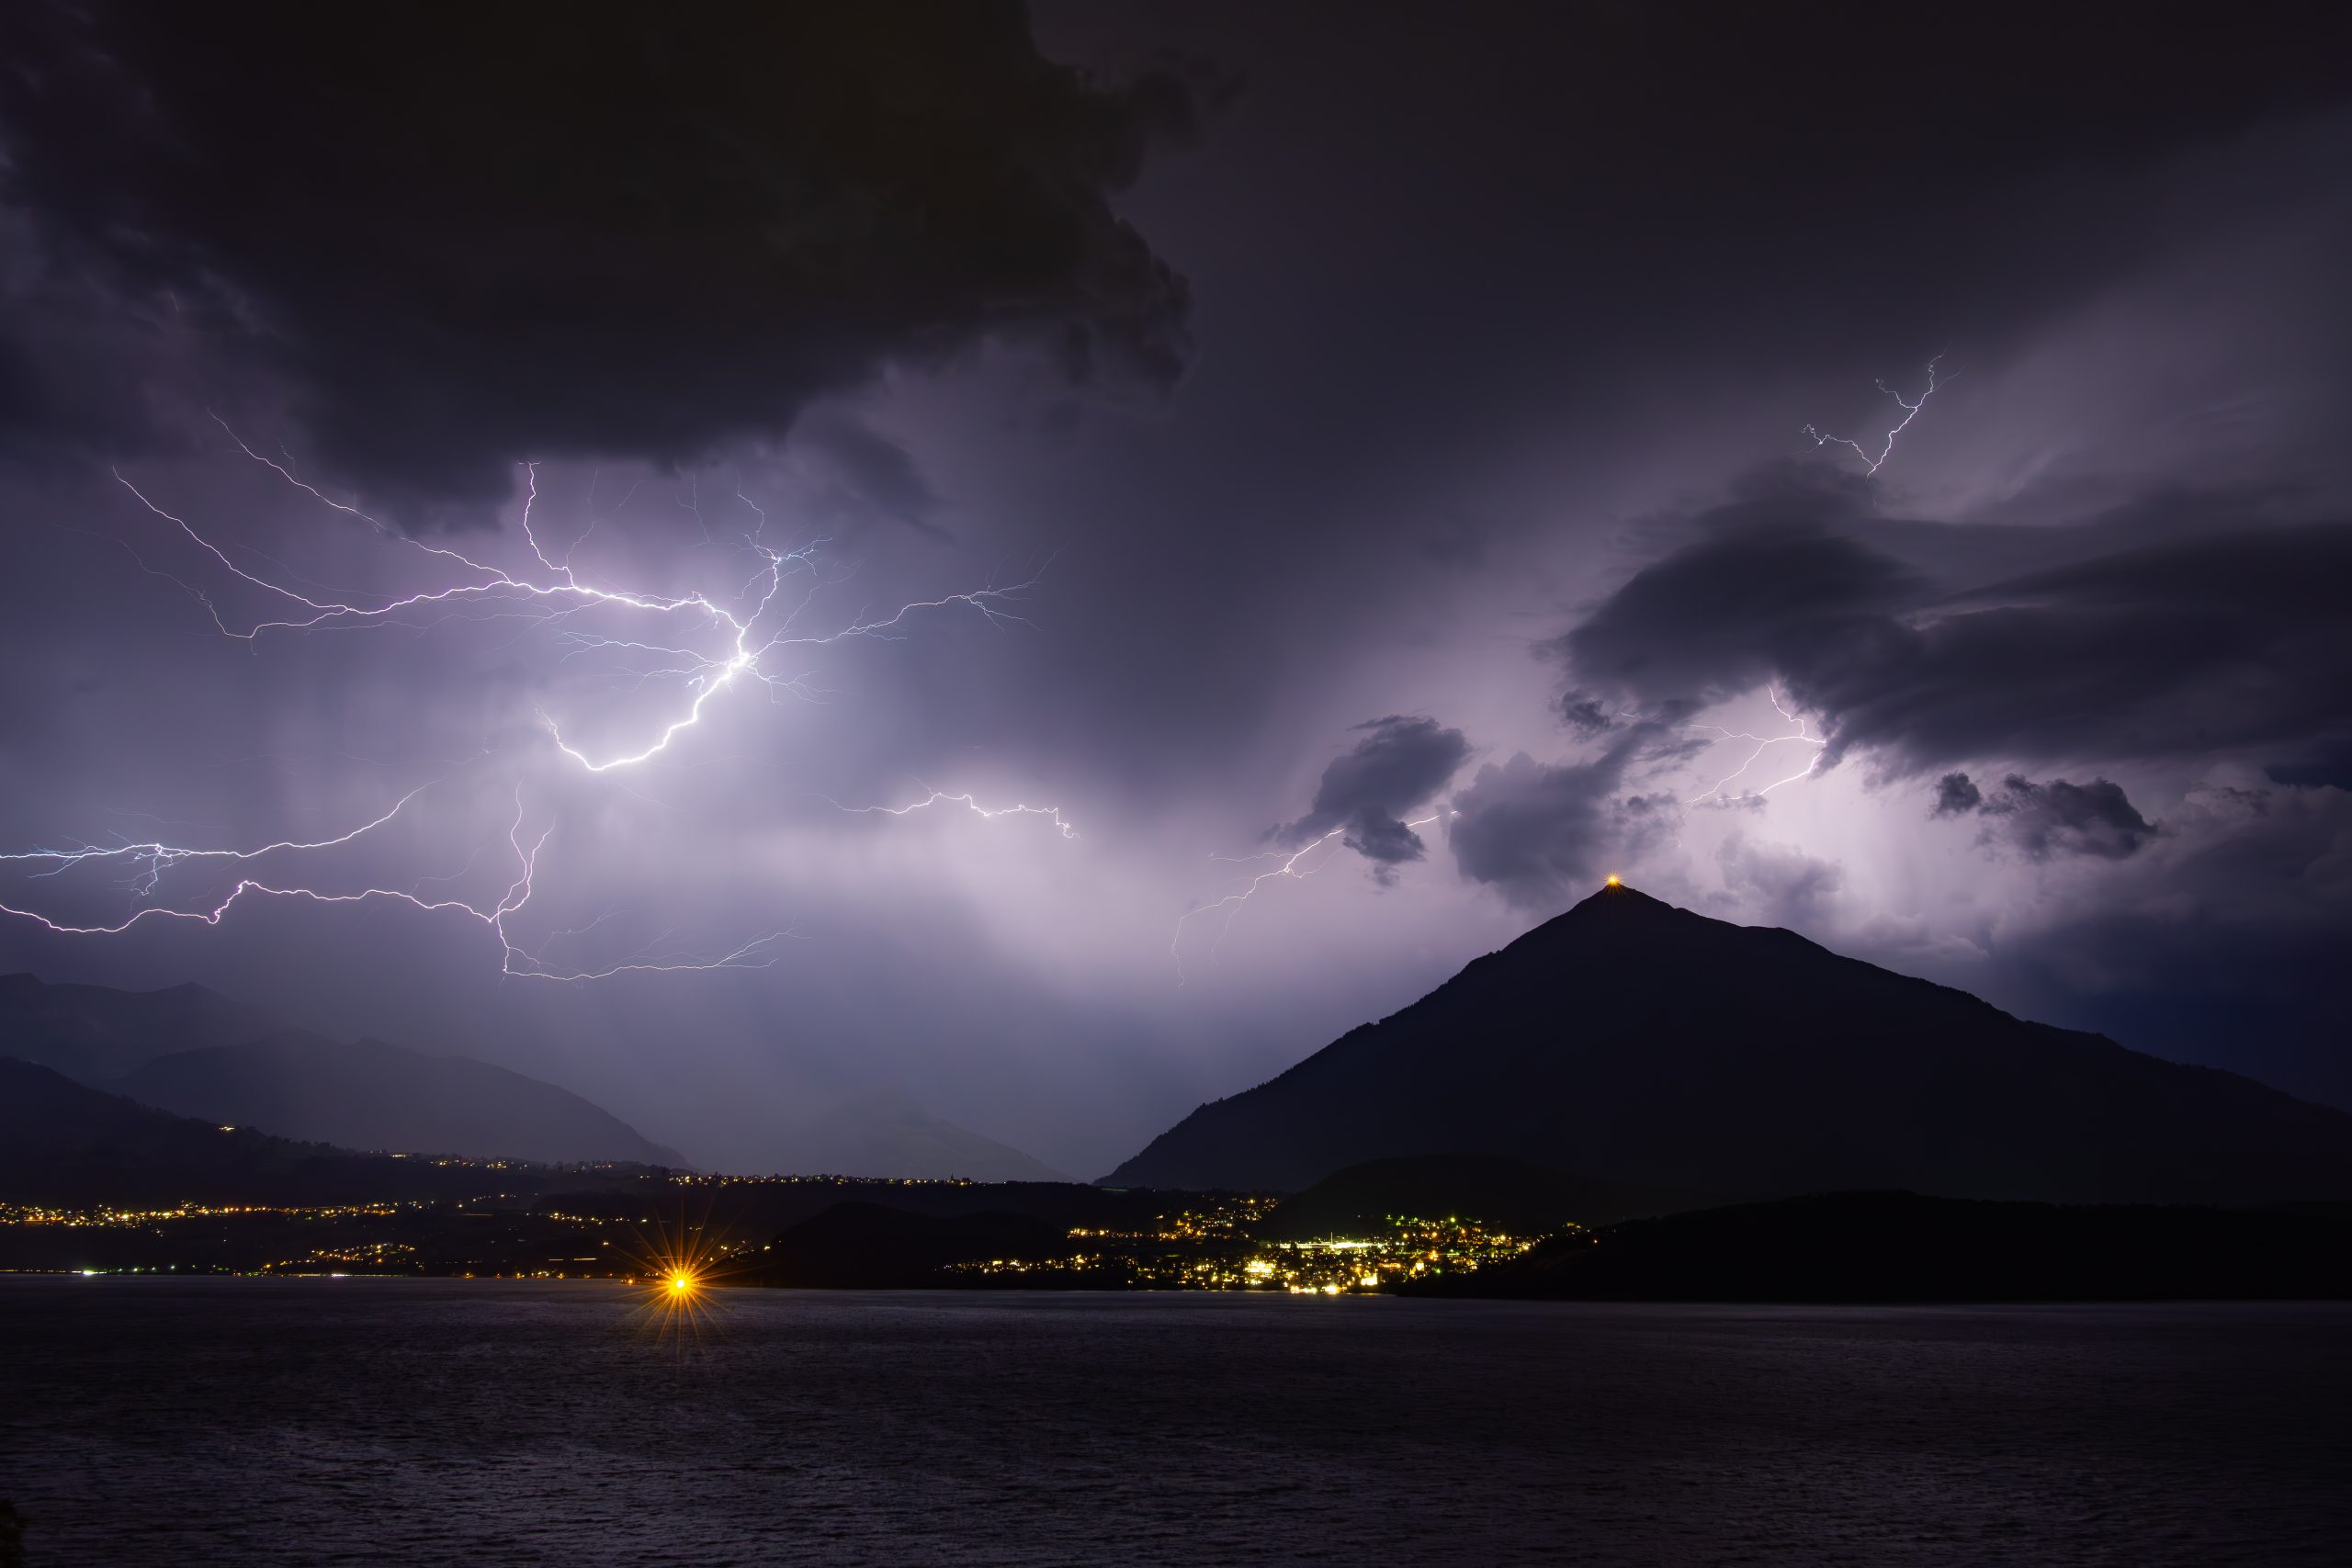 Unsere 10 Tipps zum Fotografieren mit Blitz